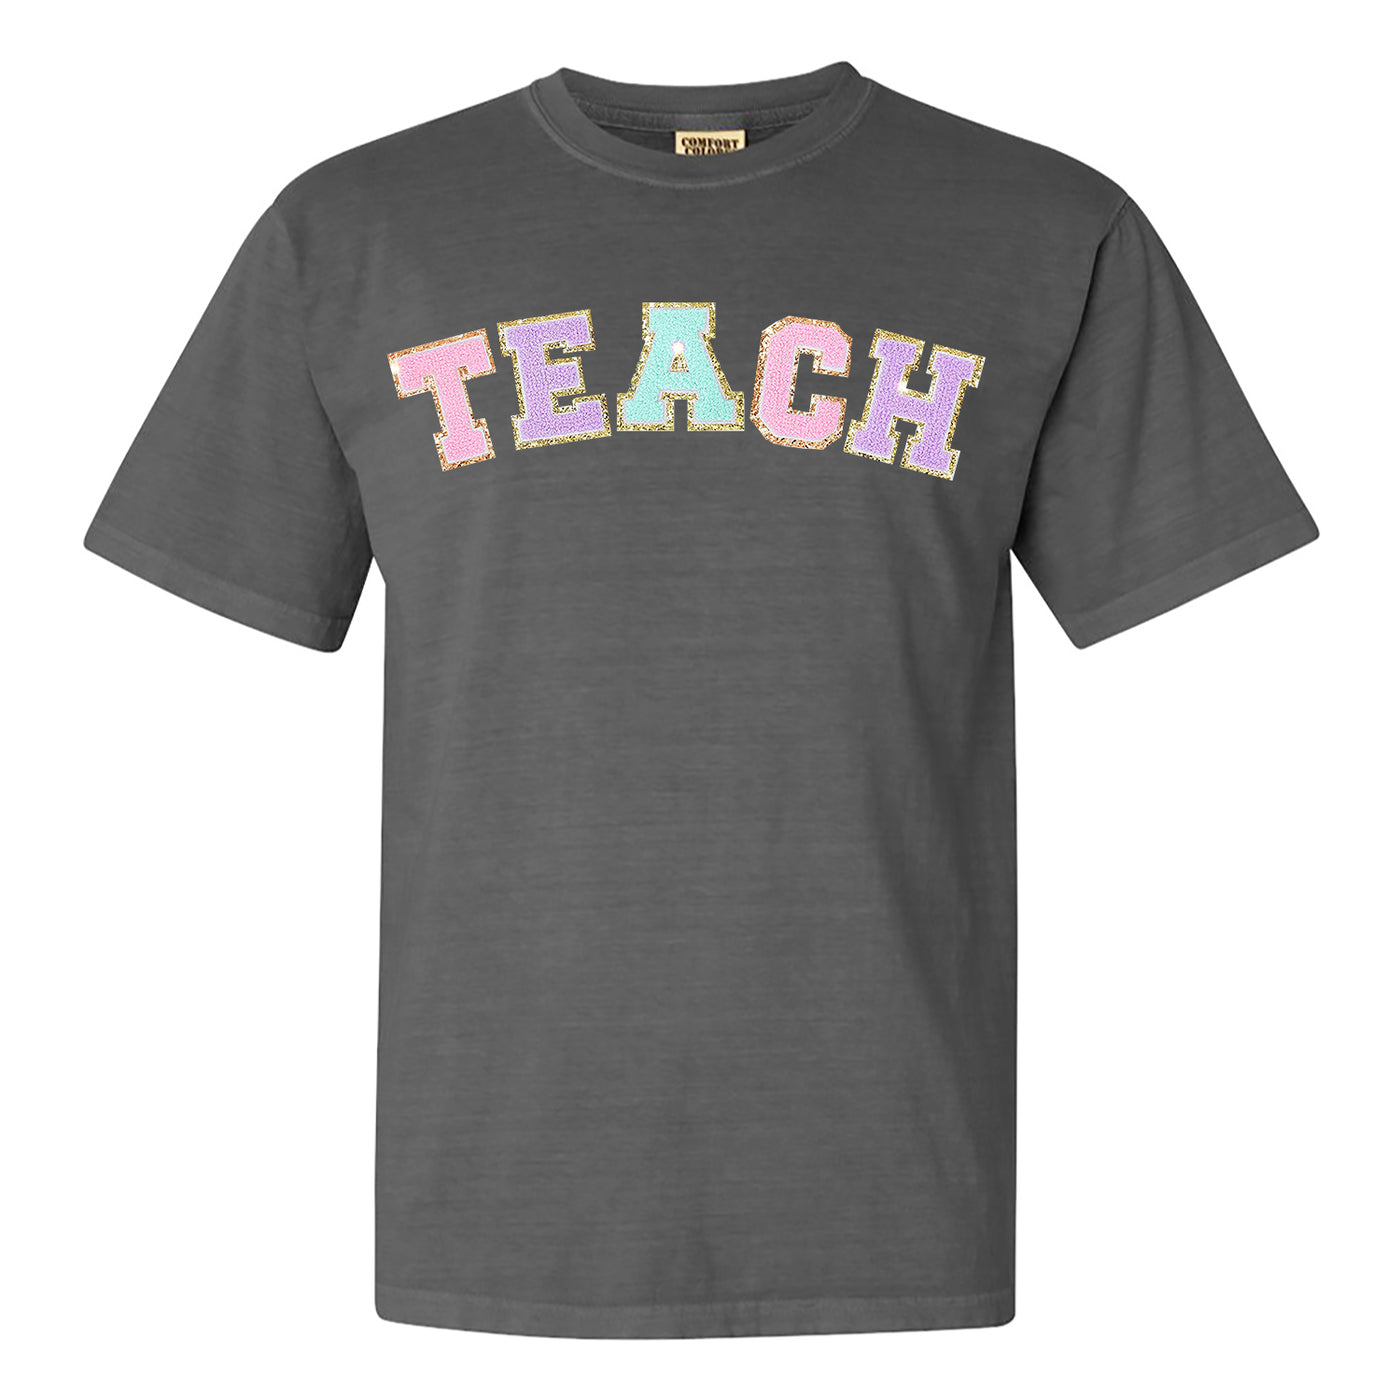 Teach Letter Patch Comfort Colors T-Shirt